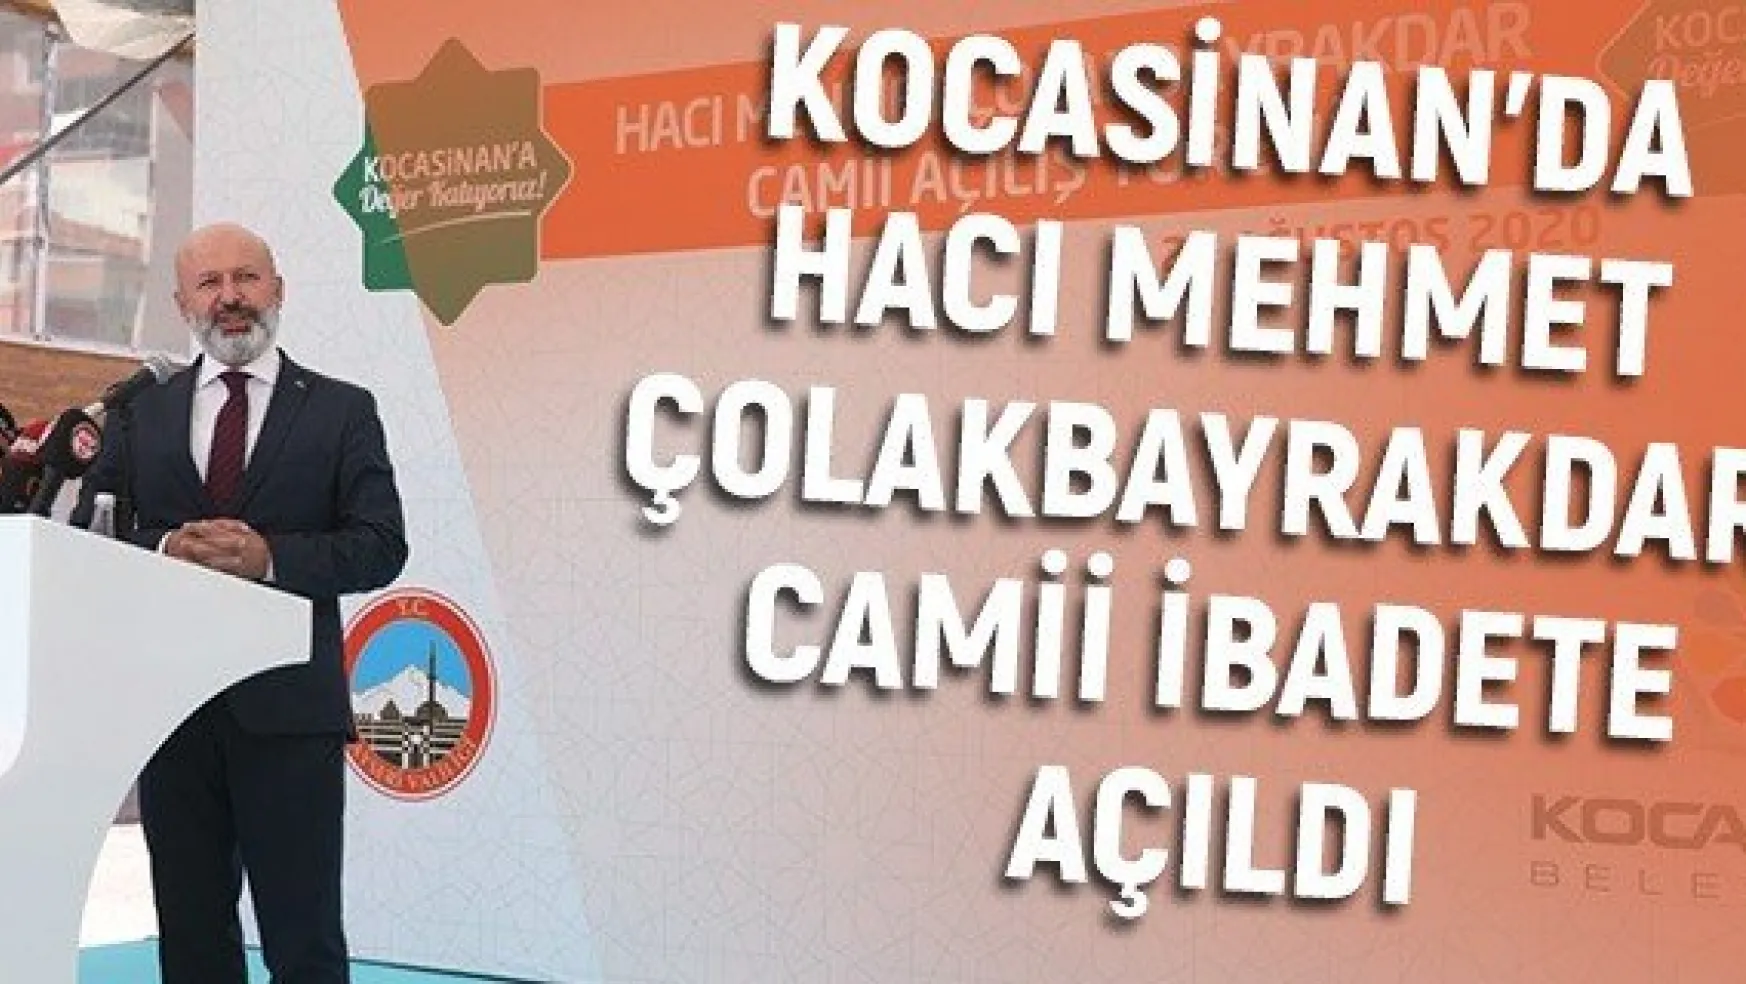 Kocasinan'da Hacı Mehmet Çolakbayrakdar Camii ibadete açıldı